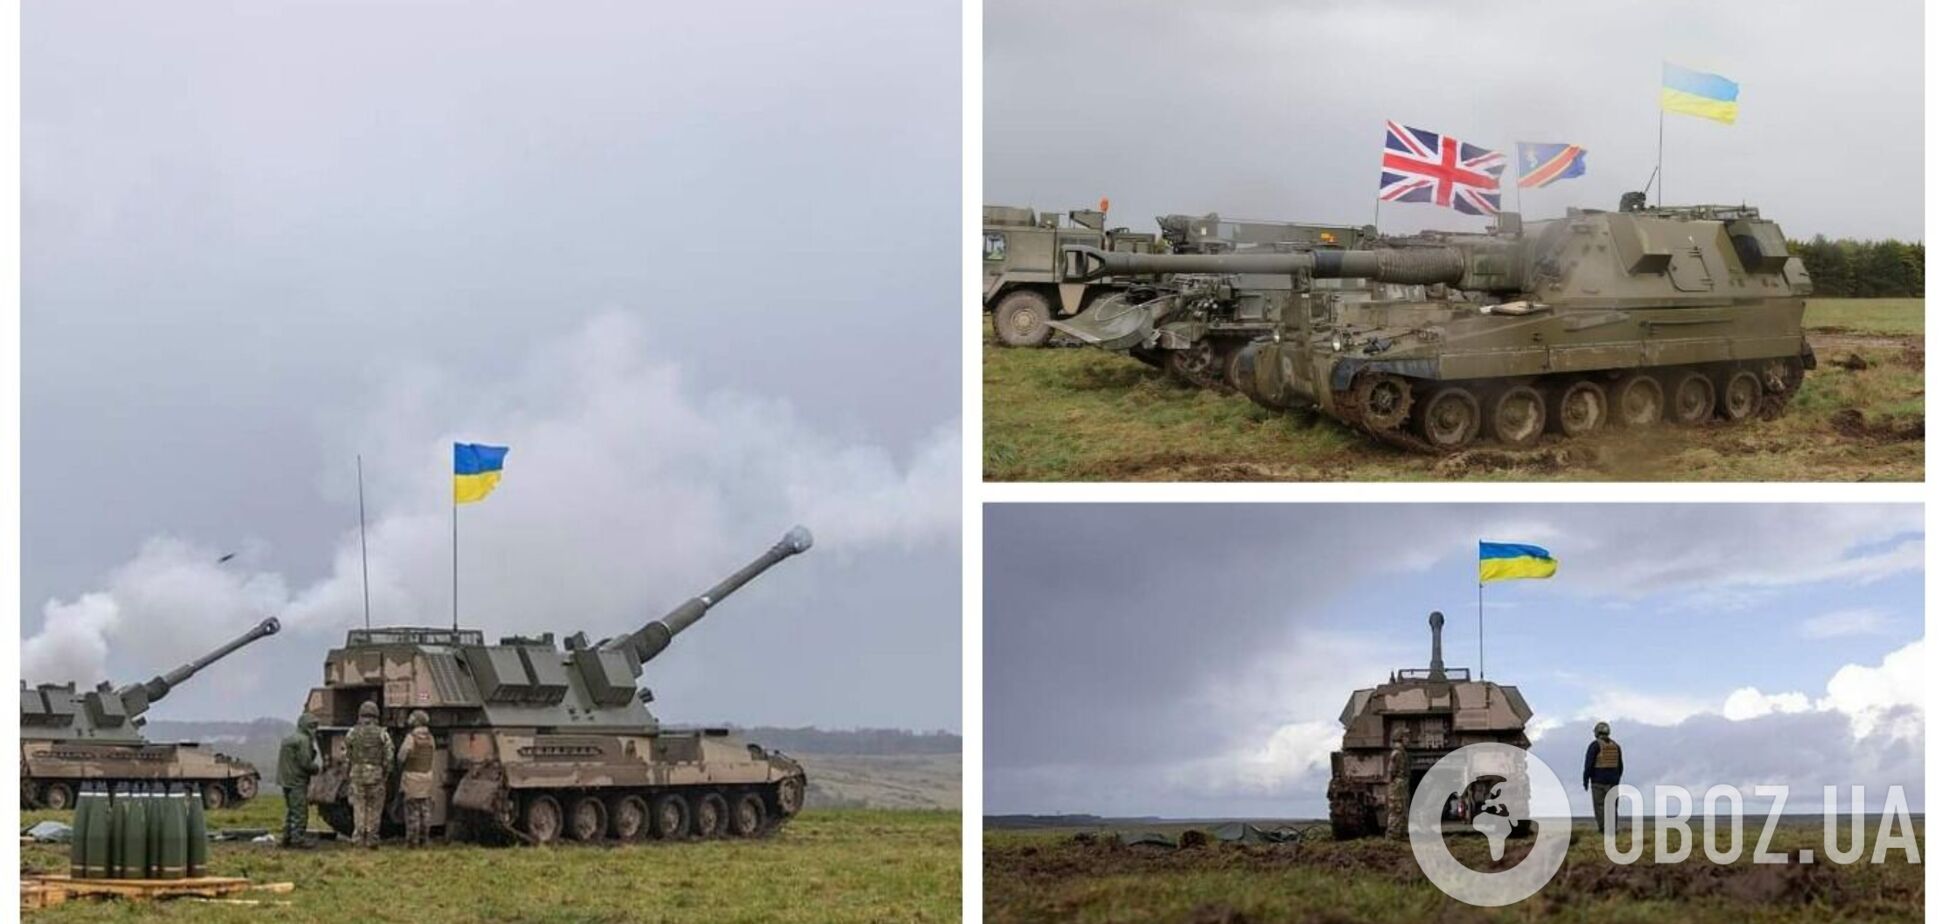 Минобороны показало обучение украинских артиллеристов на САУ AS90 в Великобритании. Фото